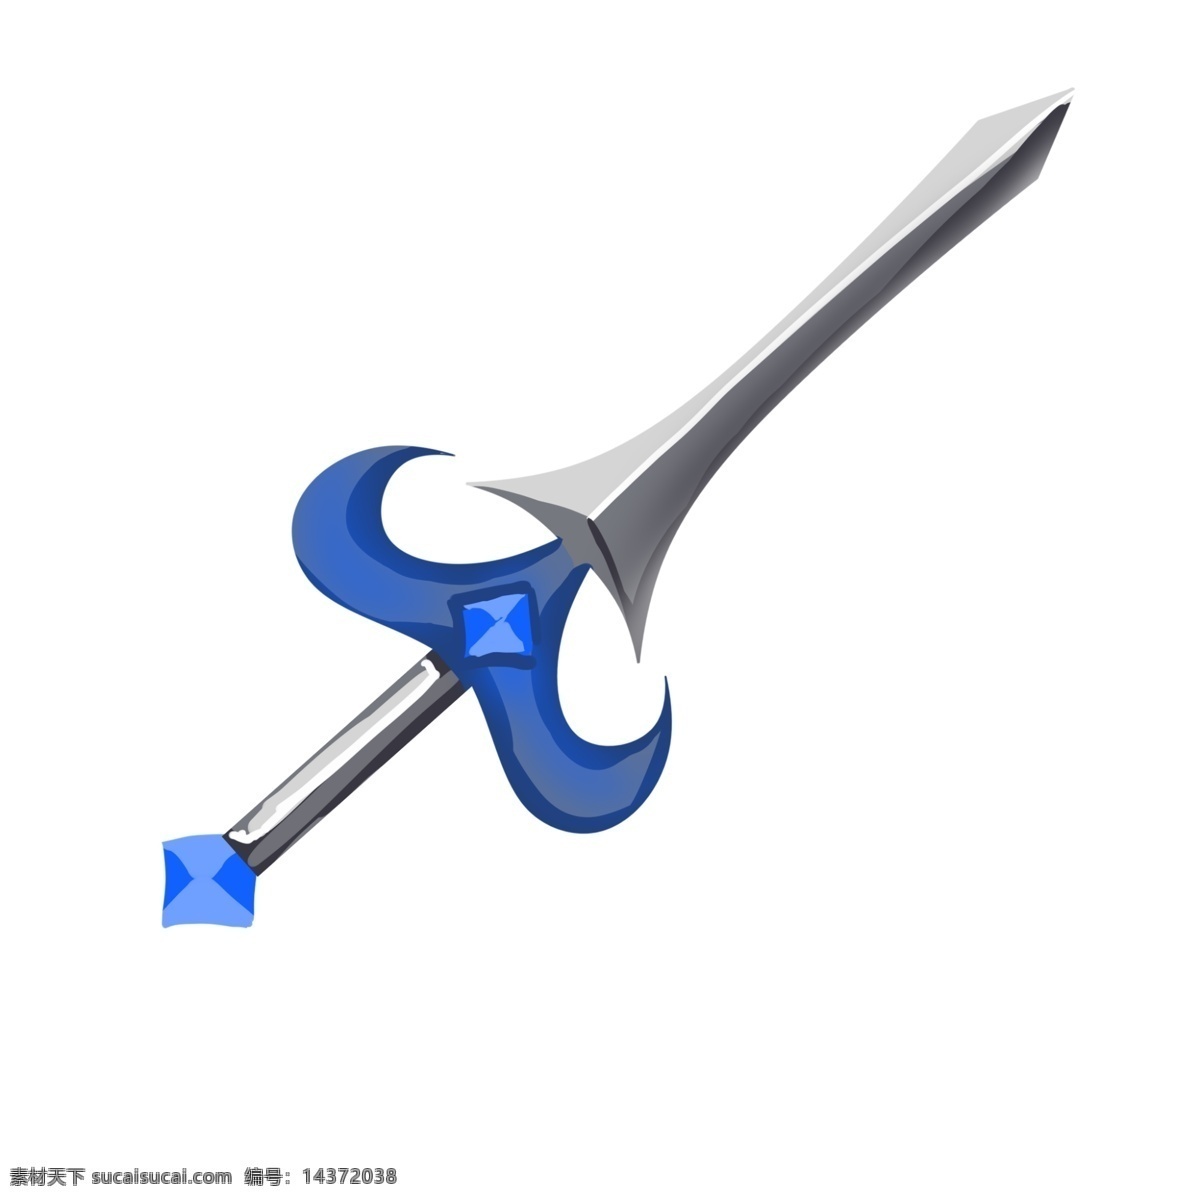 蓝色游戏宝剑 宝剑 刀剑 剑